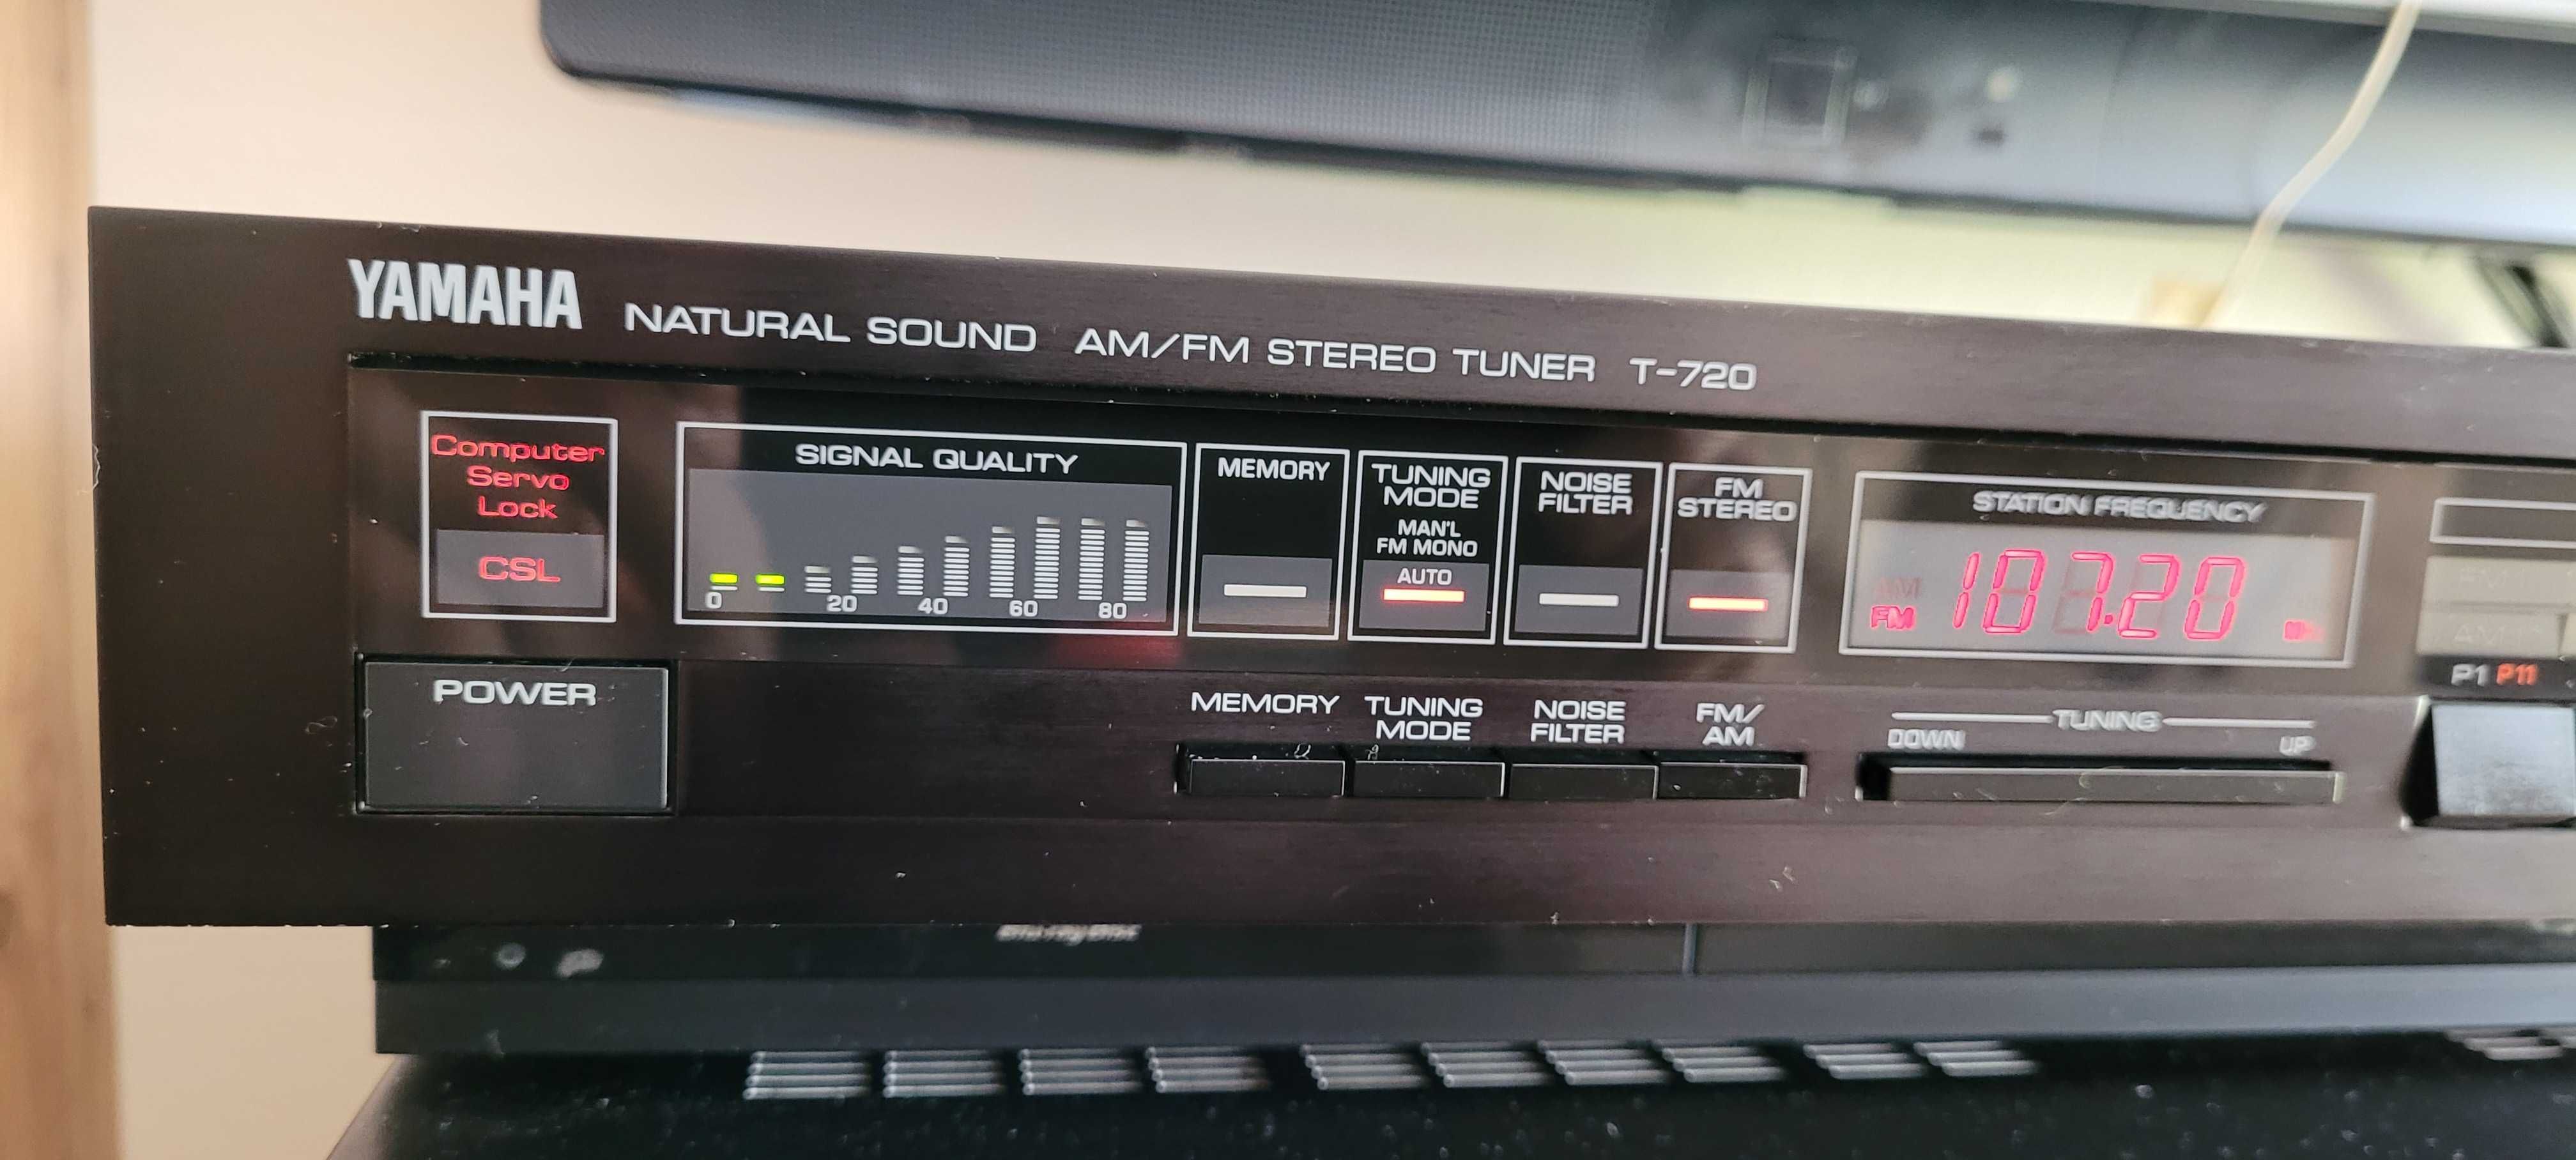 Yamaha T-720 AM/FM Stereo Tuner, całkowicie sprawne i oryginalne radio